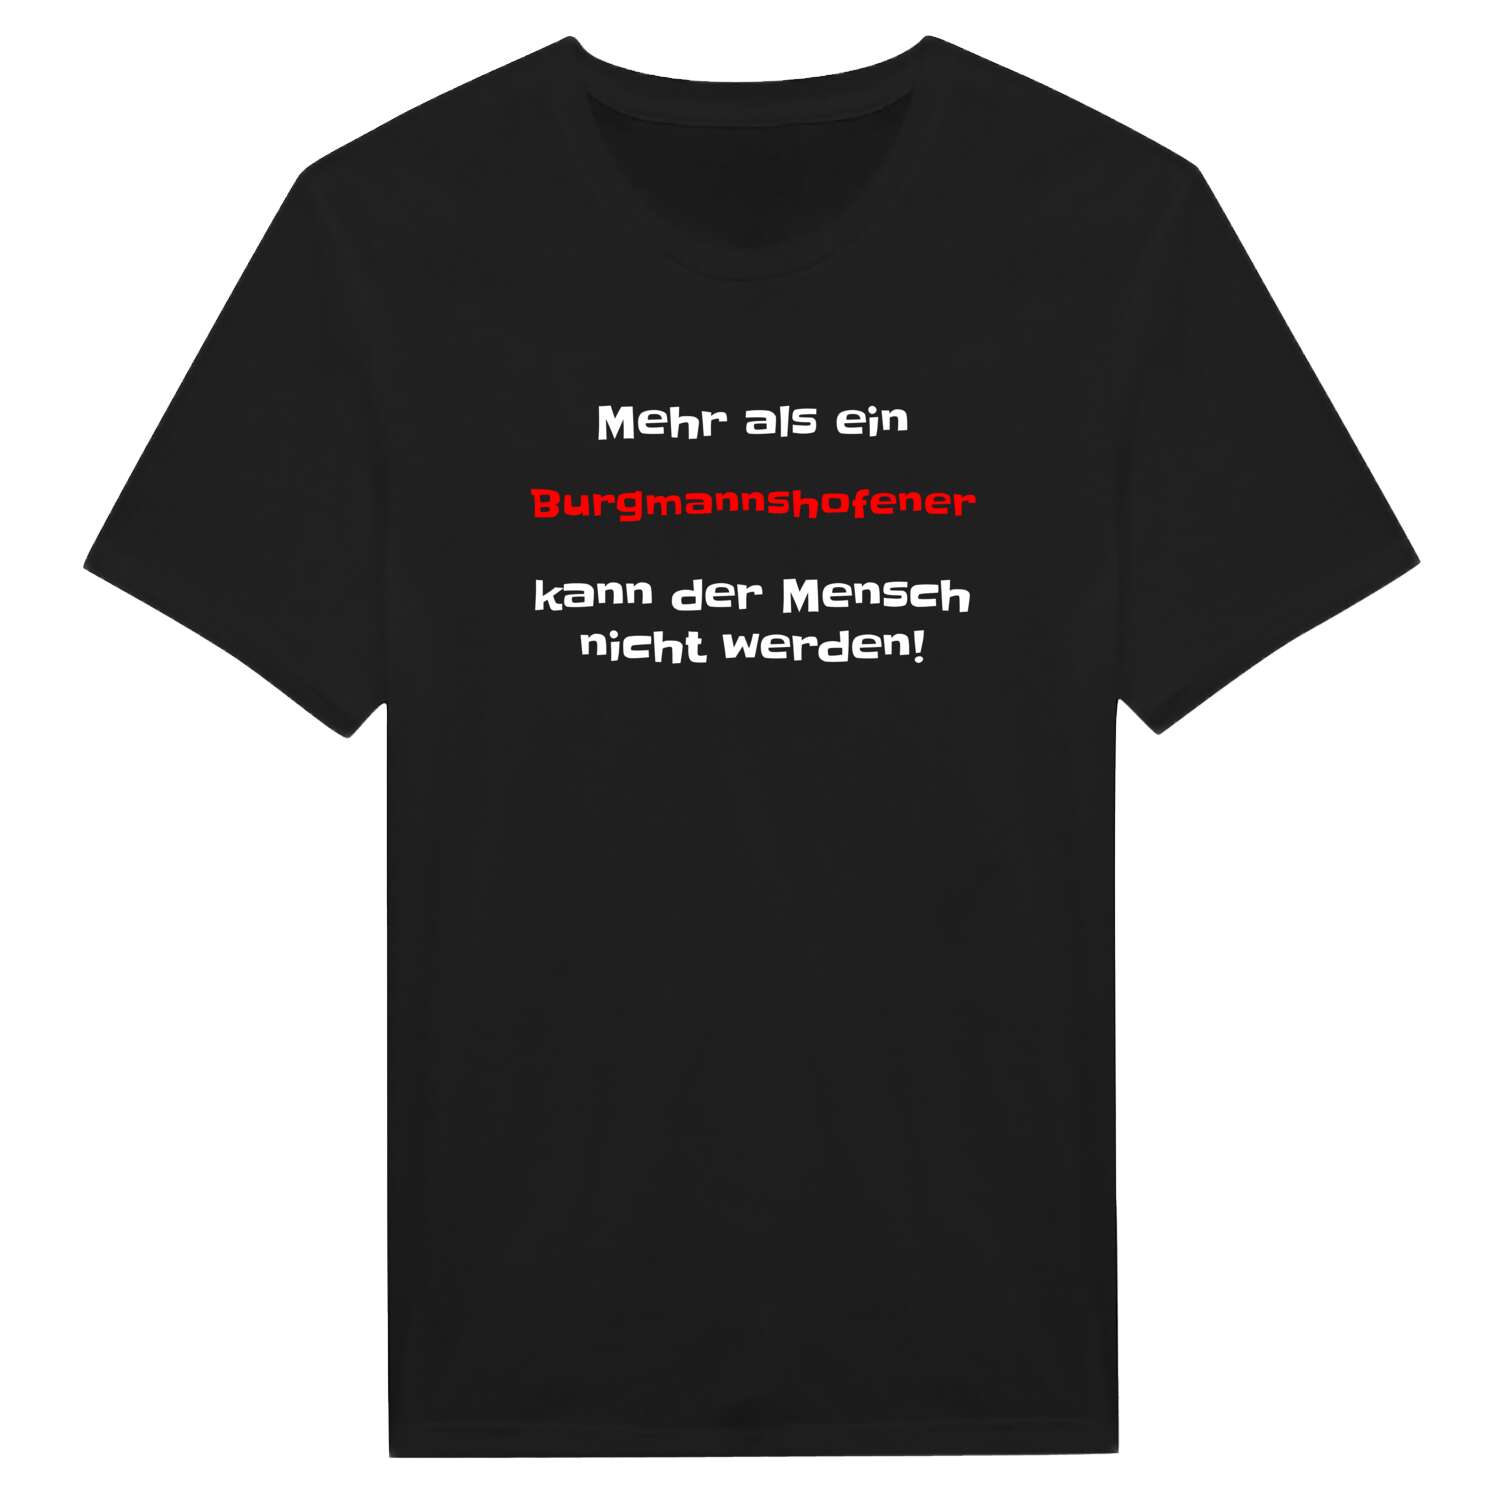 Burgmannshofen T-Shirt »Mehr als ein«